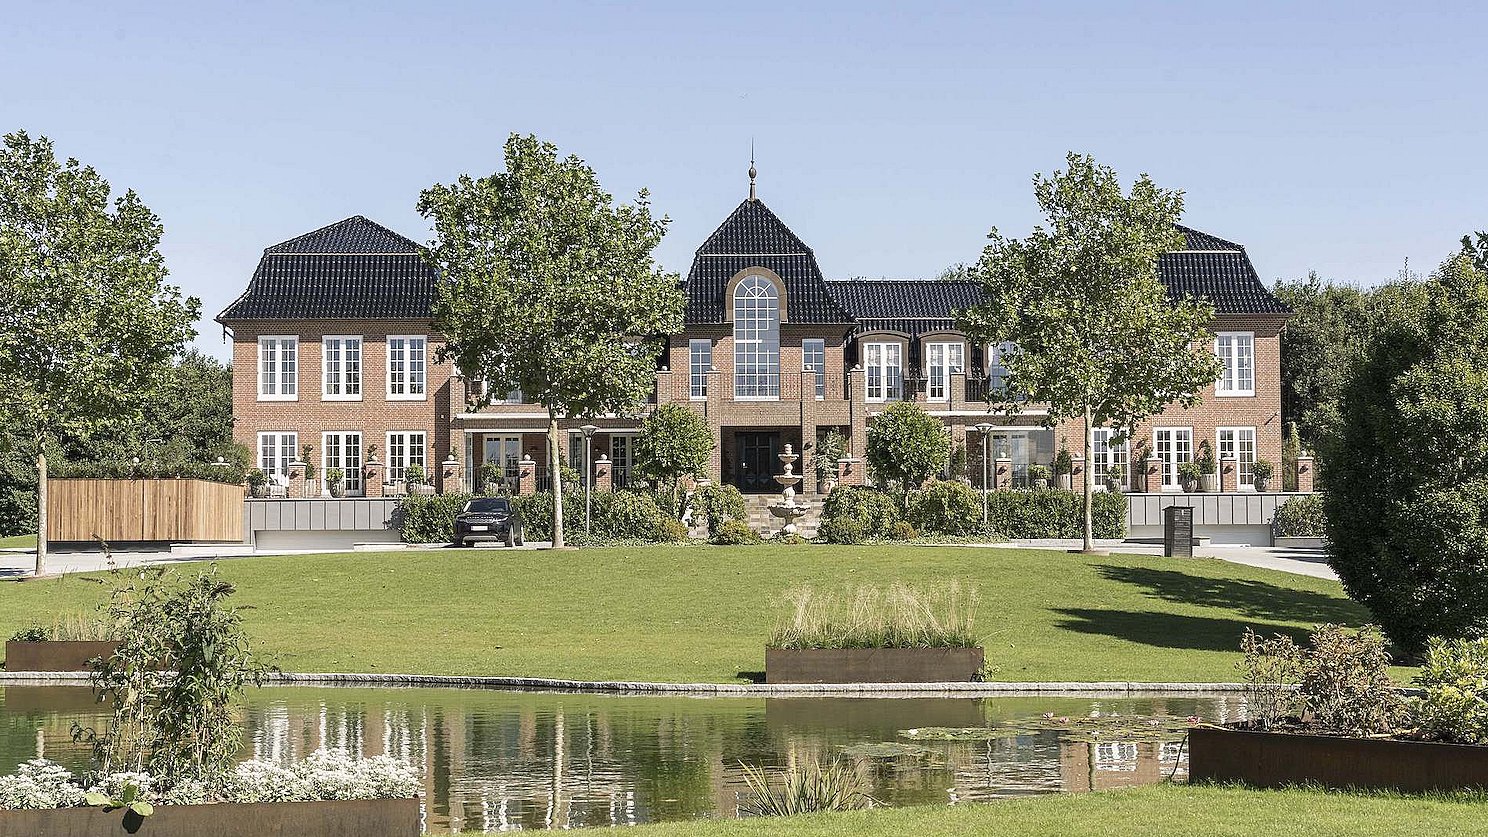 Luksus-sommerhus, kæmpevilla og panoramalejlighed: Her er Fyns dyreste ejendomme TV2 Fyn